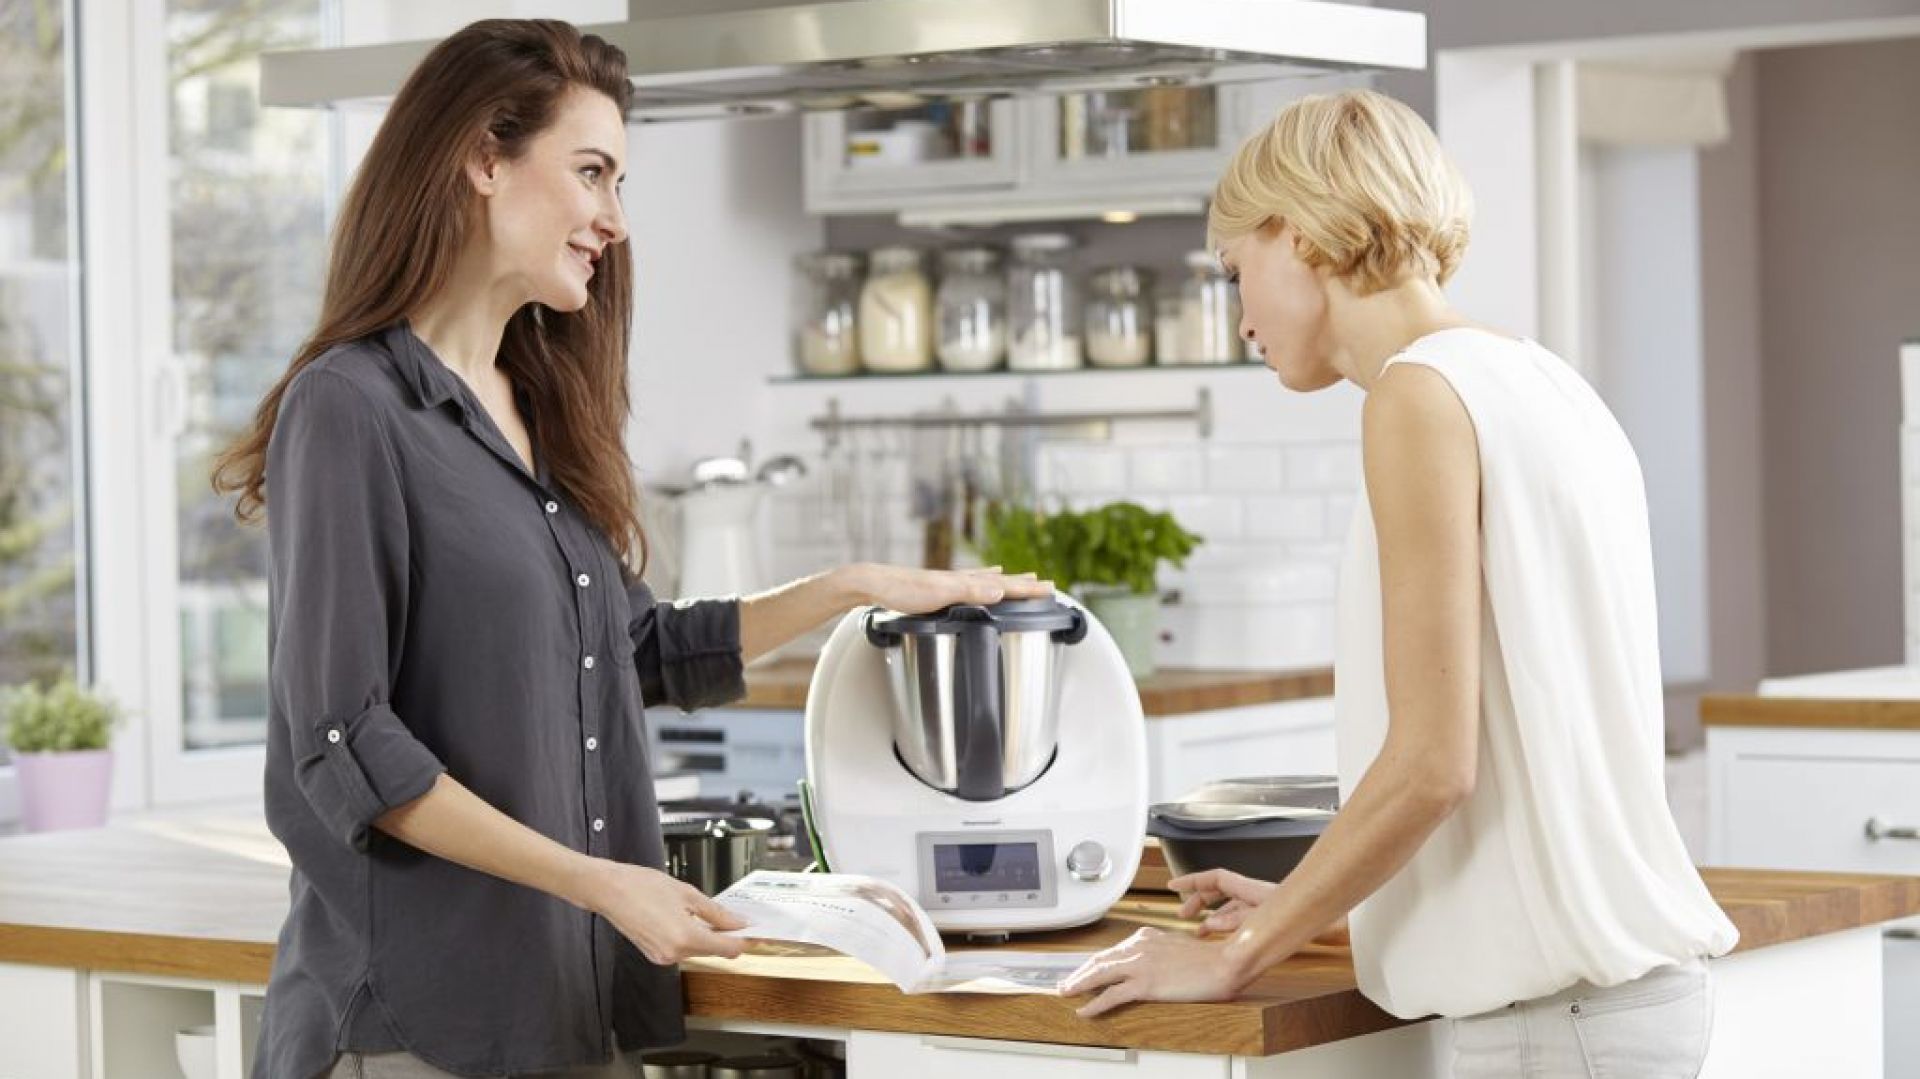 Cook-Key® – podbija świat nowych technologii w kuchni